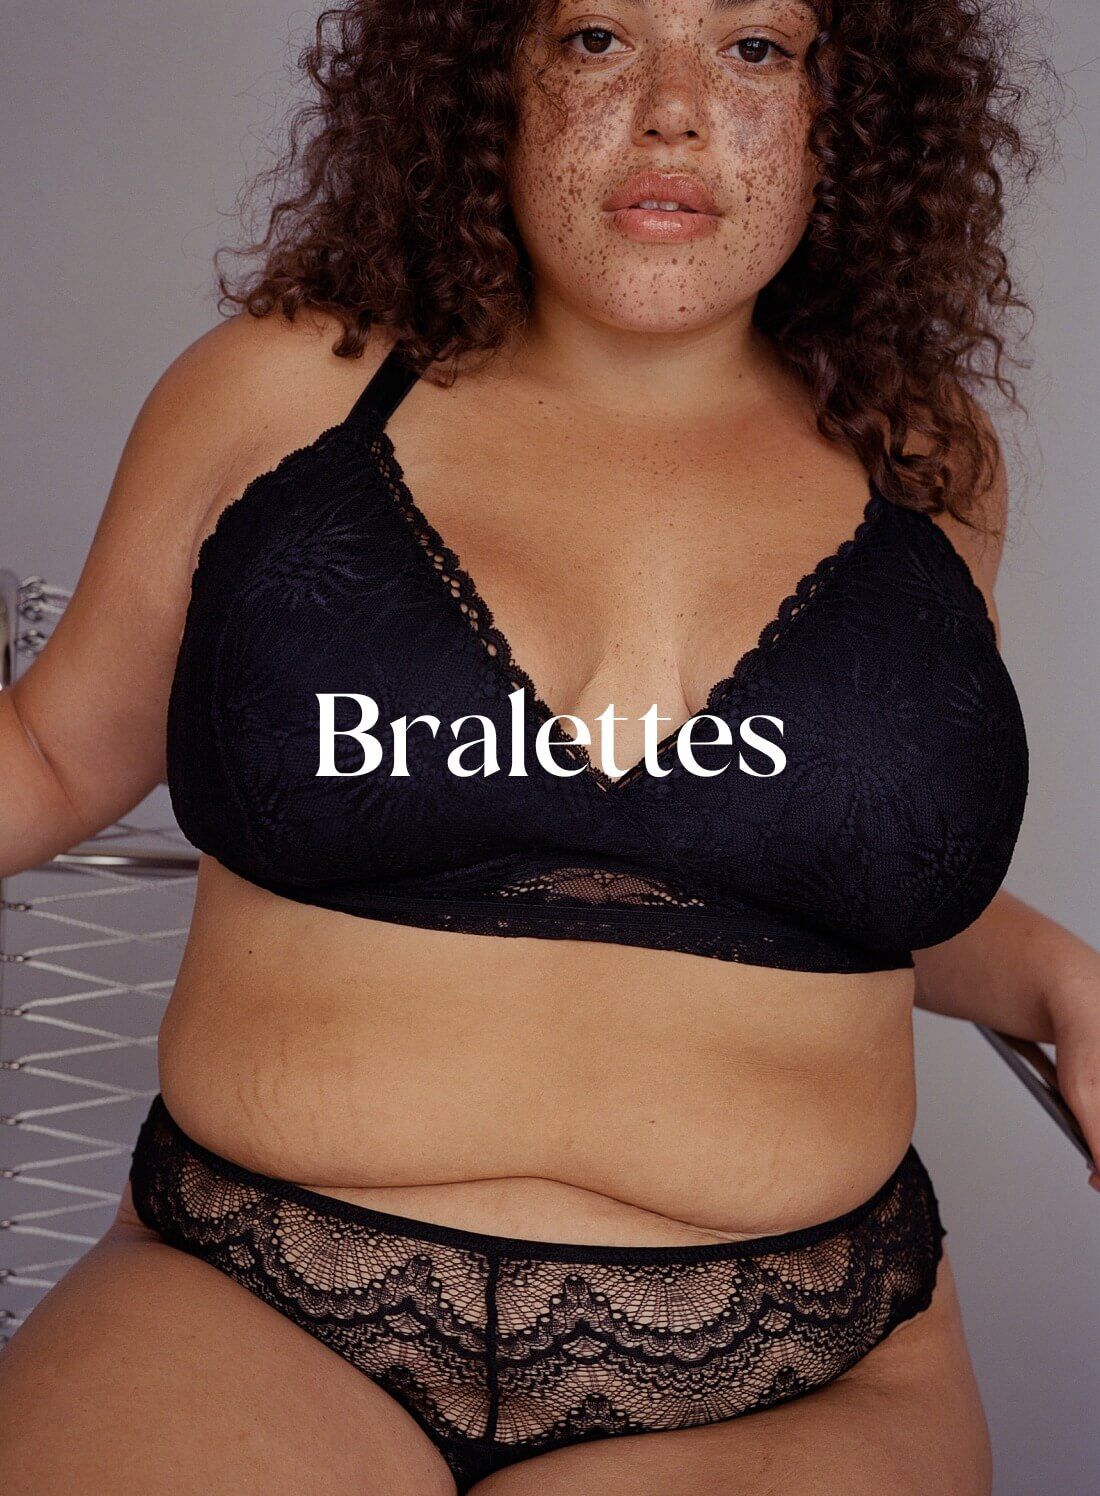 Women Bras & Bralettes, Womens Women Bras & Bralettes Online